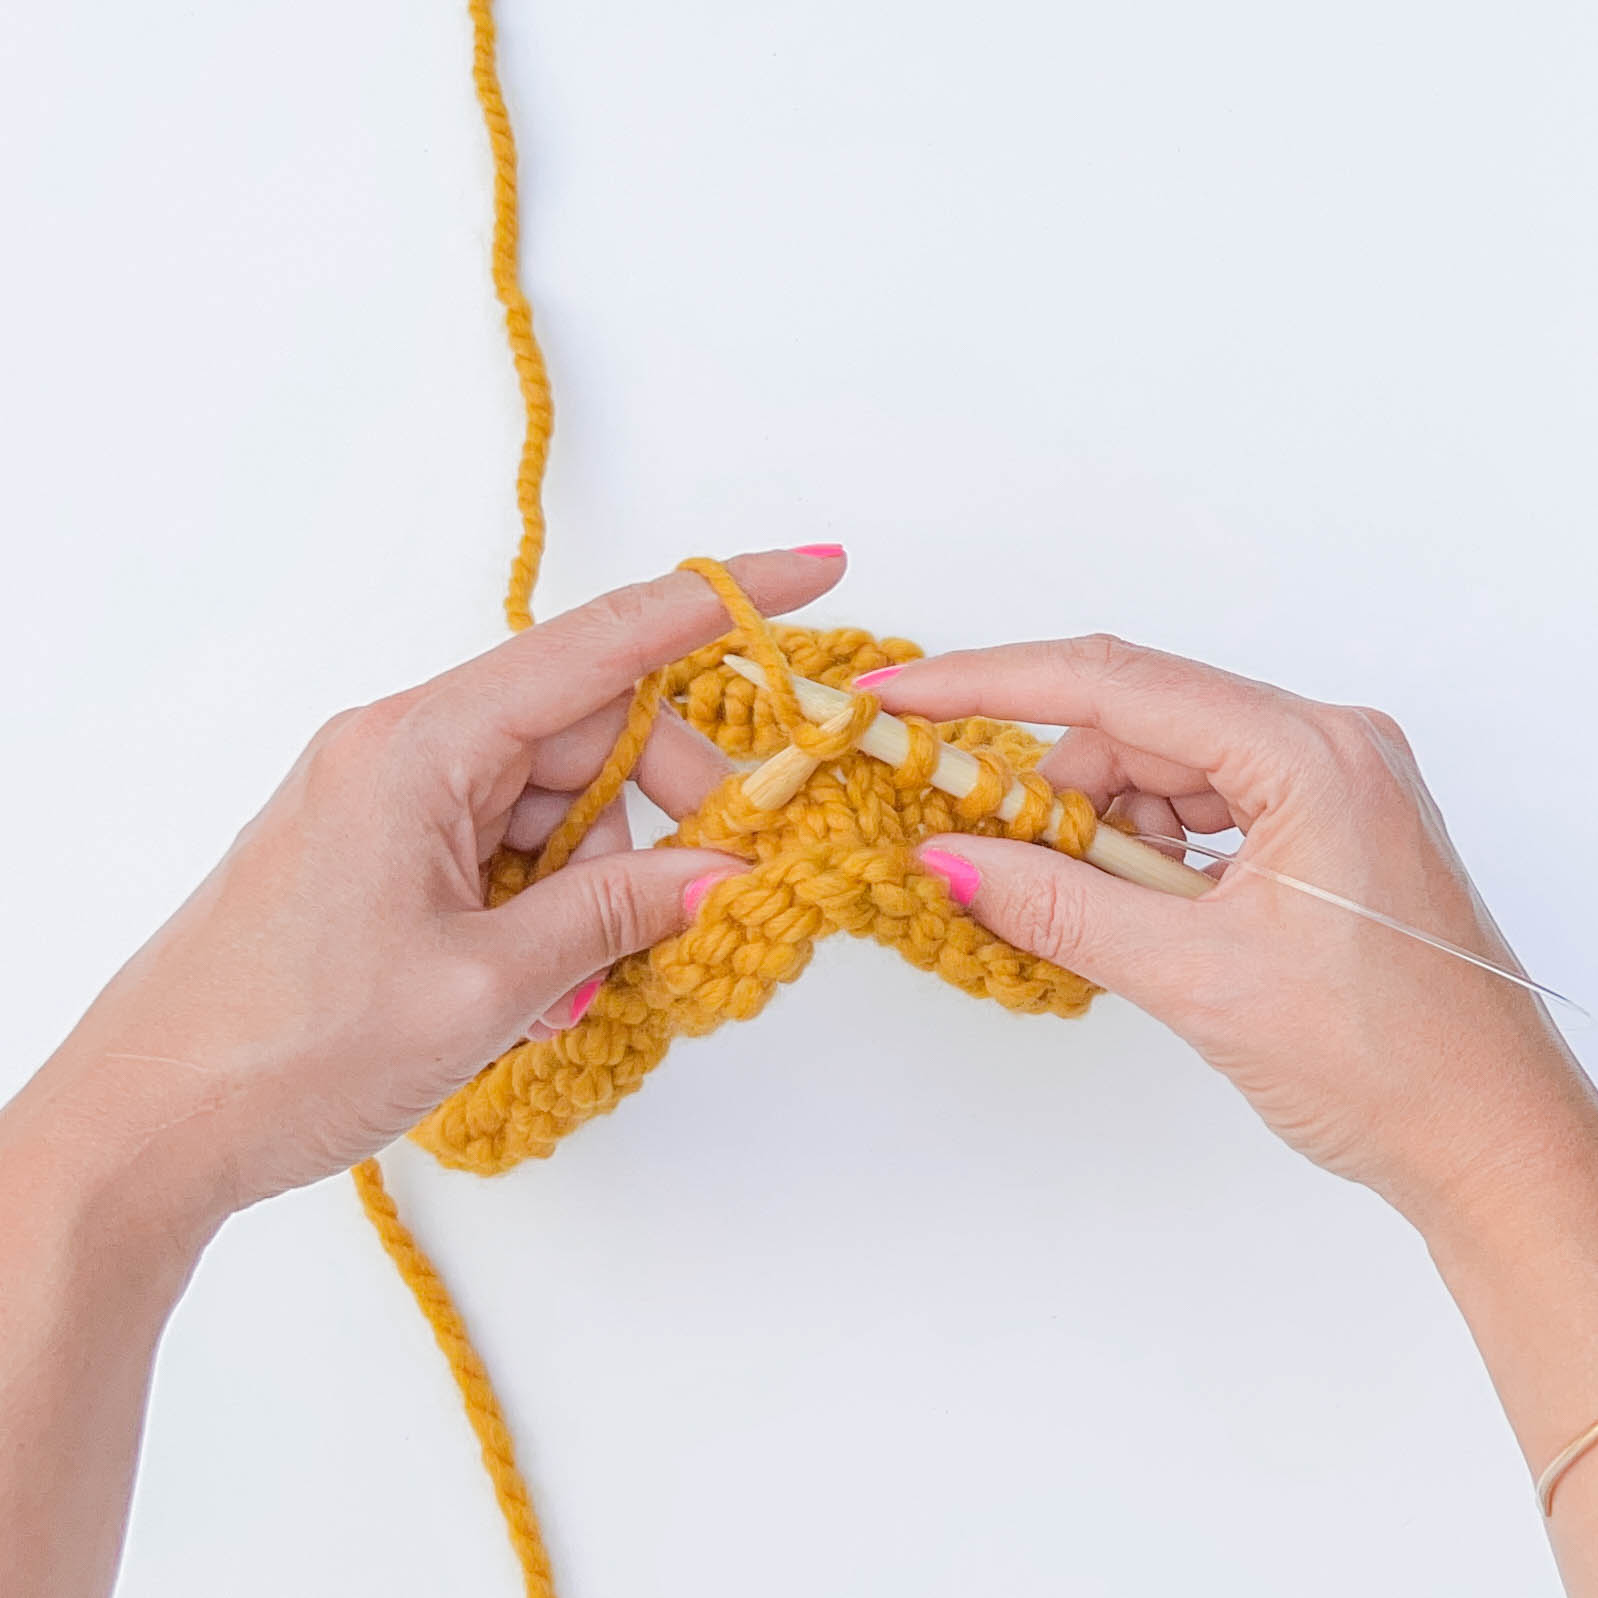 Magic Loop Knitting [7 Simple Steps]